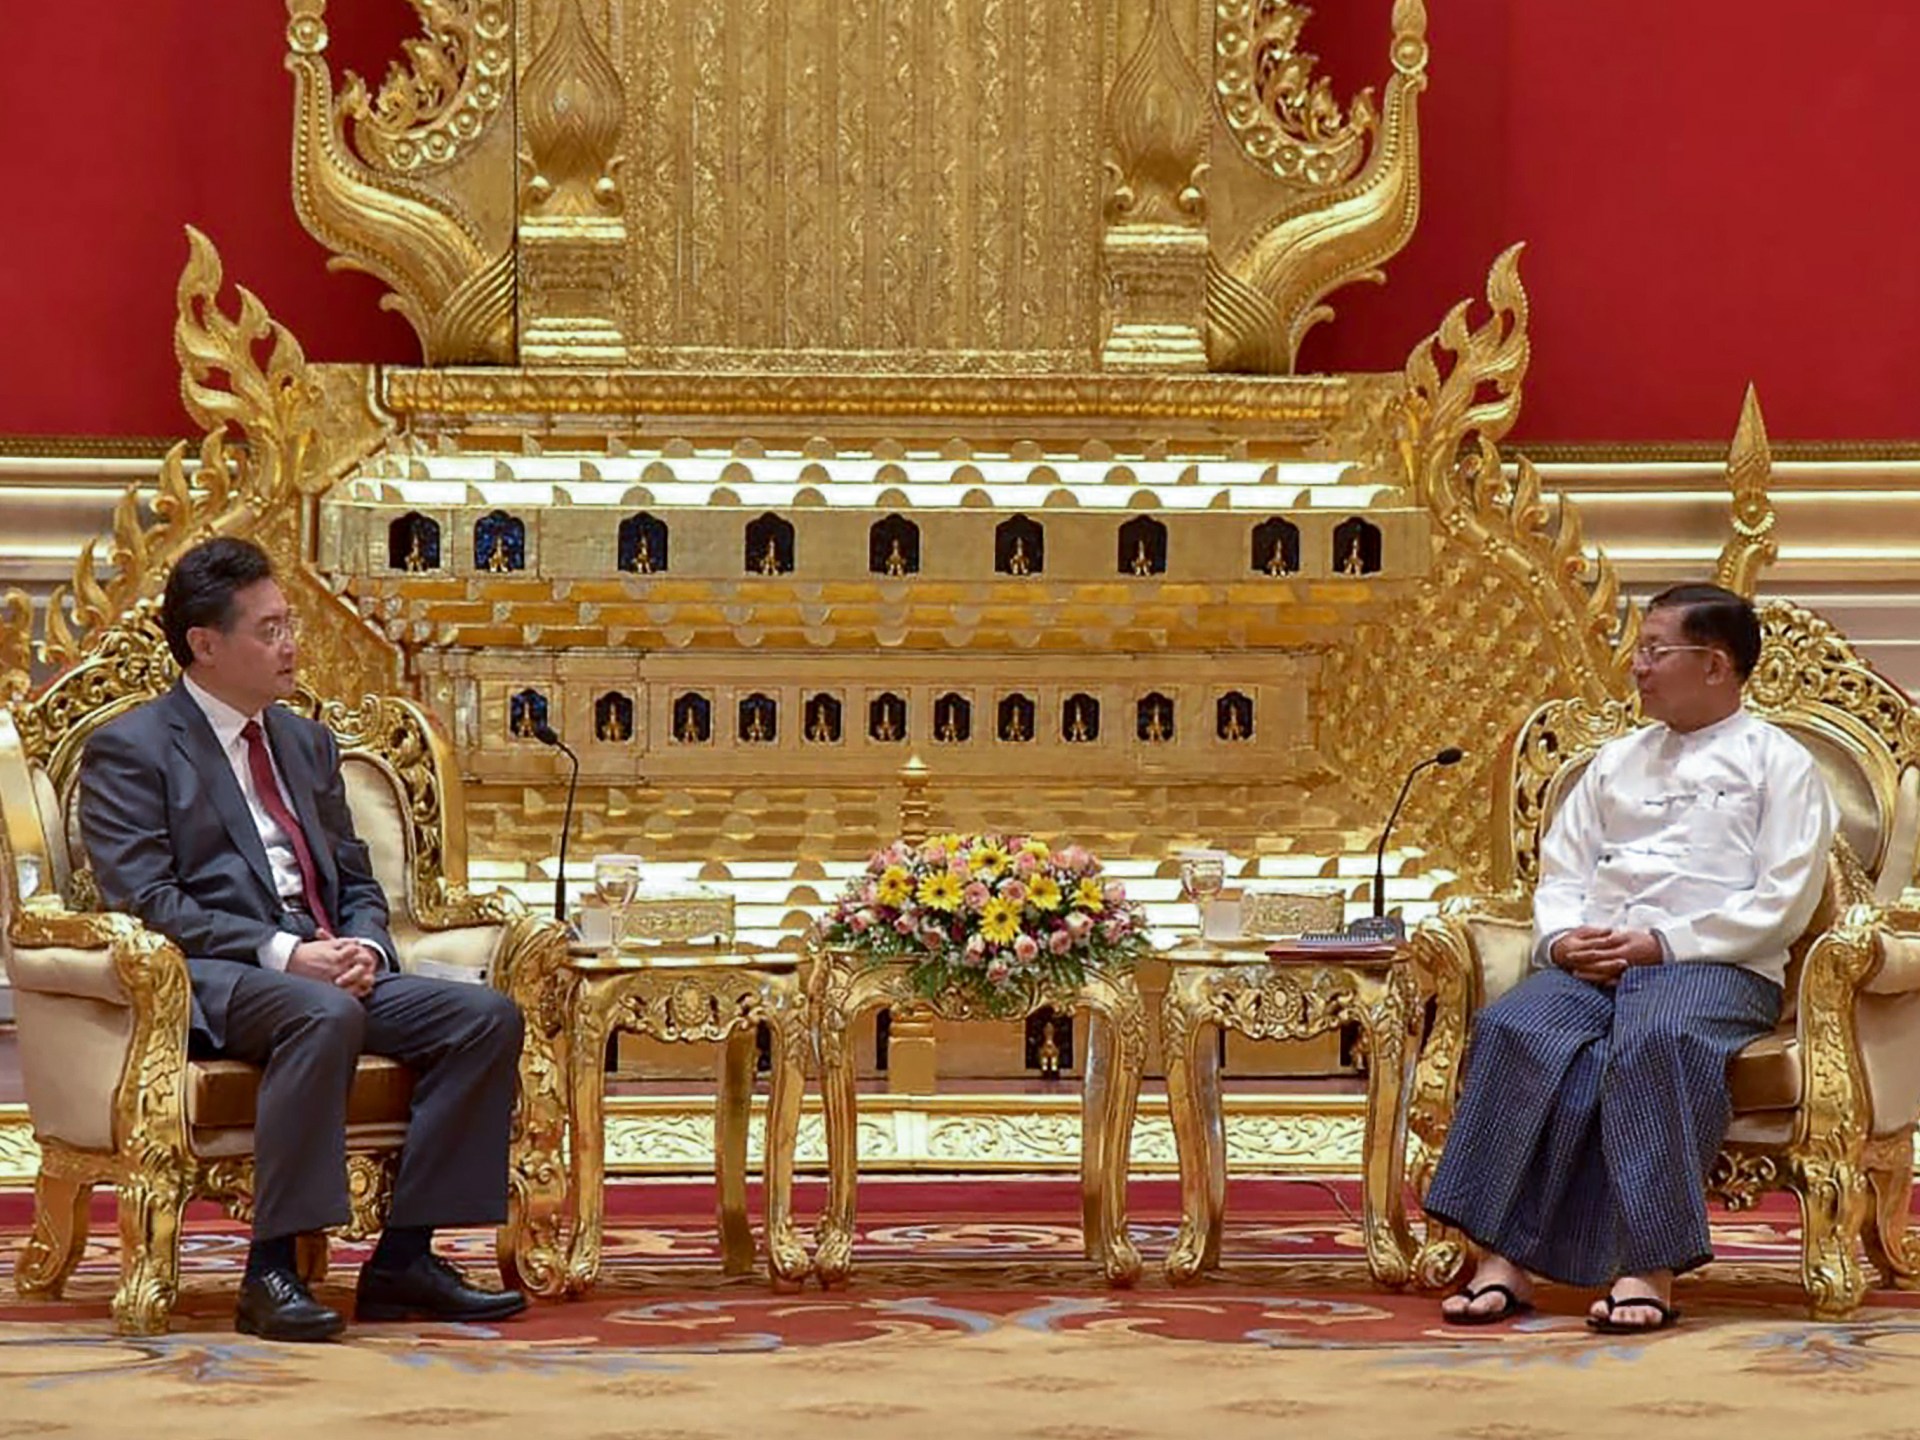 Menlu China Ekspresikan ‘Persahabatan’ Saat Berkunjung ke Myanmar |  Berita Politik